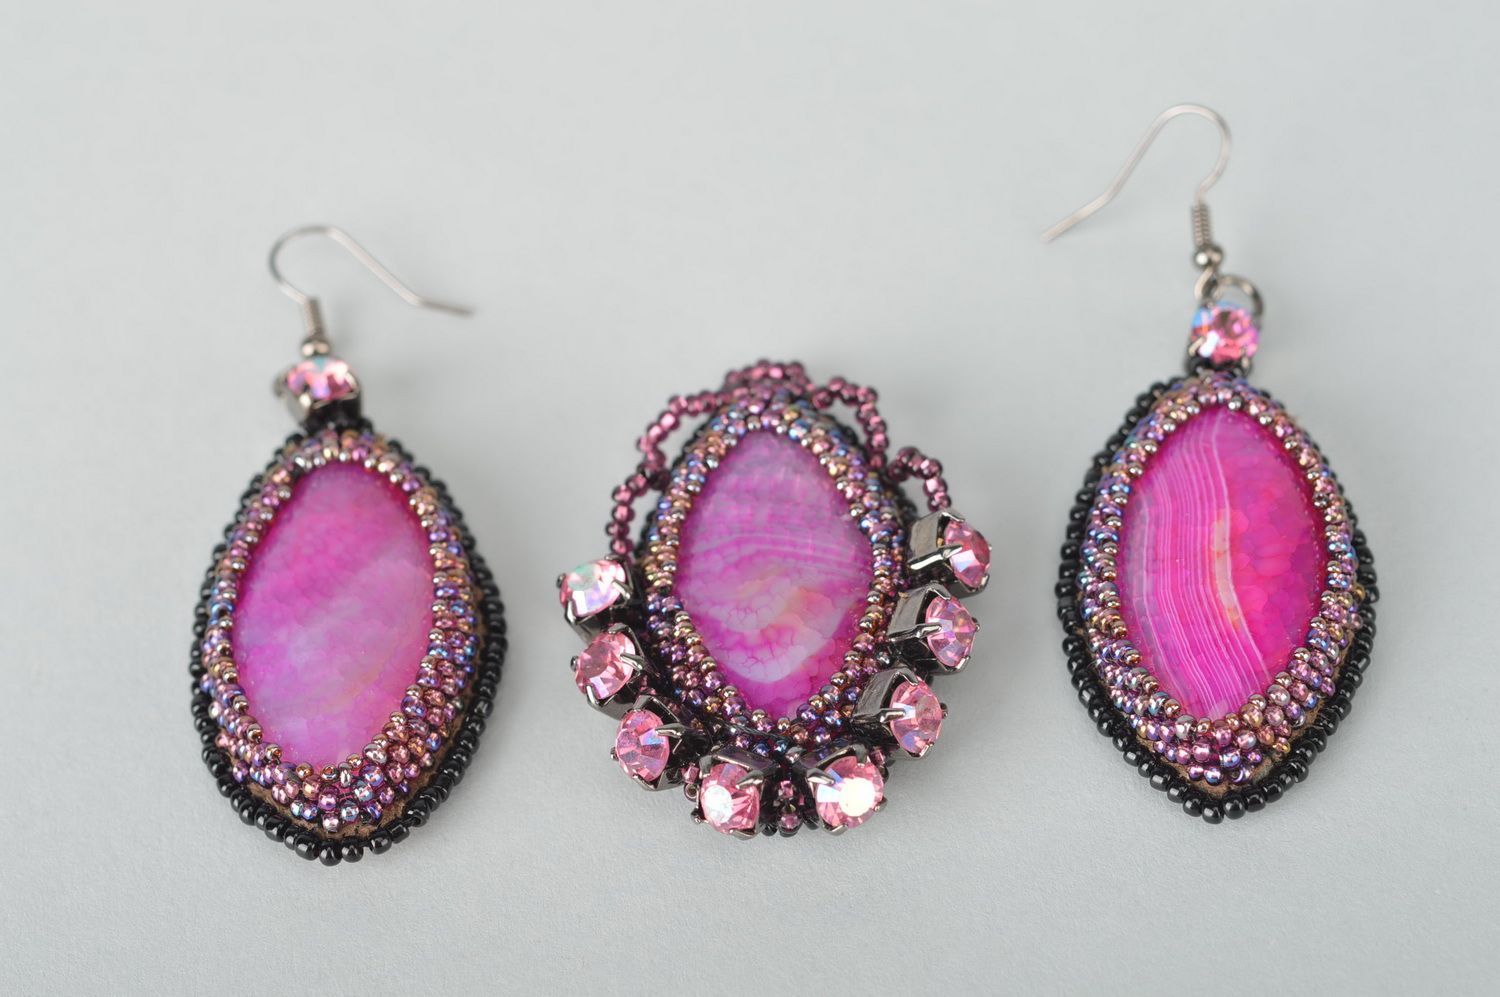 Pendentif et boucles d'oreilles Bijoux faits main violets ovales Cadeau femme photo 1